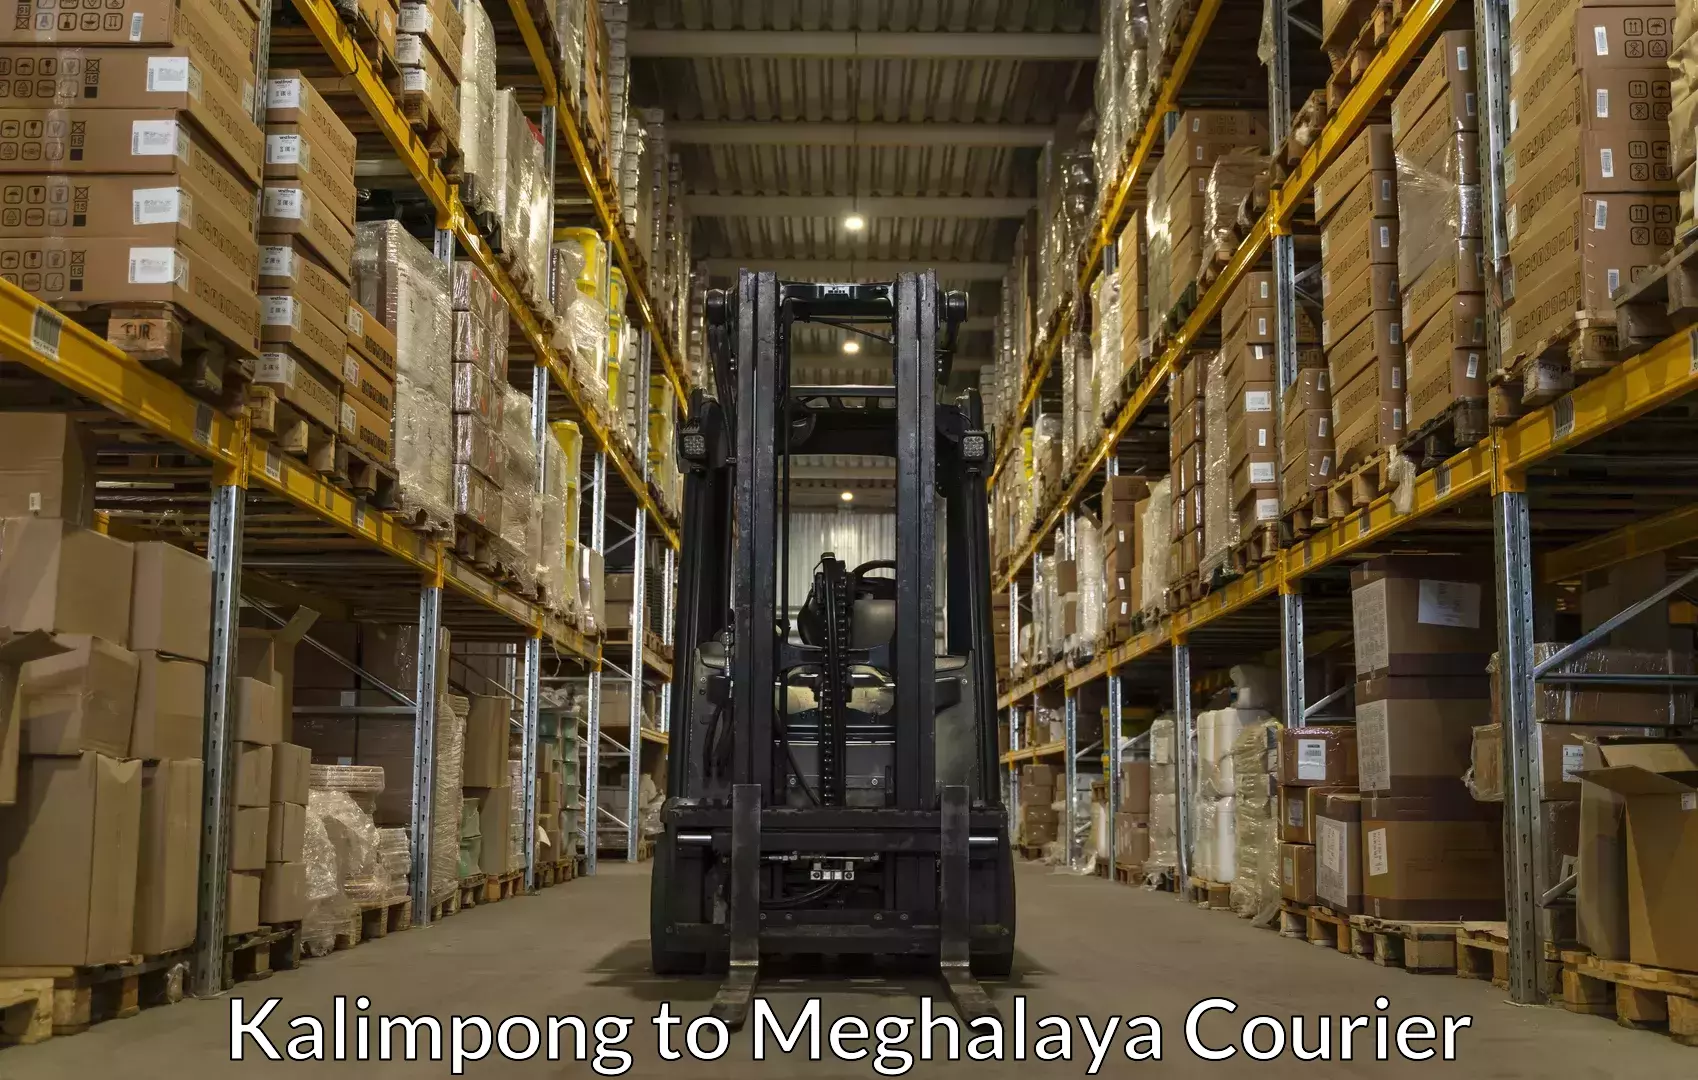 Luggage transport service Kalimpong to Meghalaya